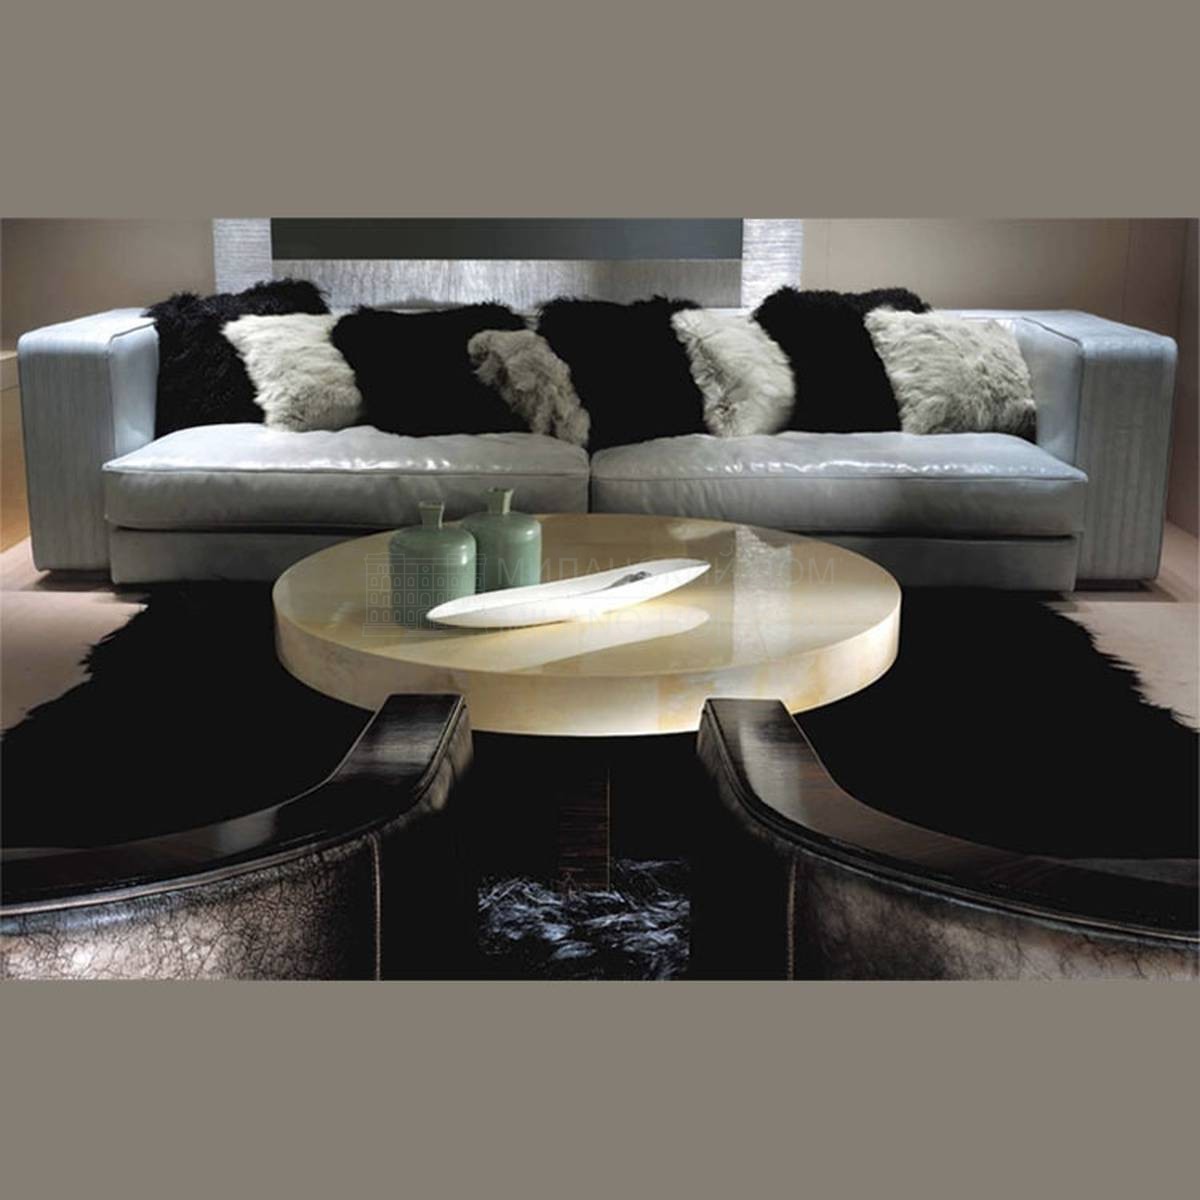 Прямой диван Ritz Sofa из Италии фабрики ULIVI